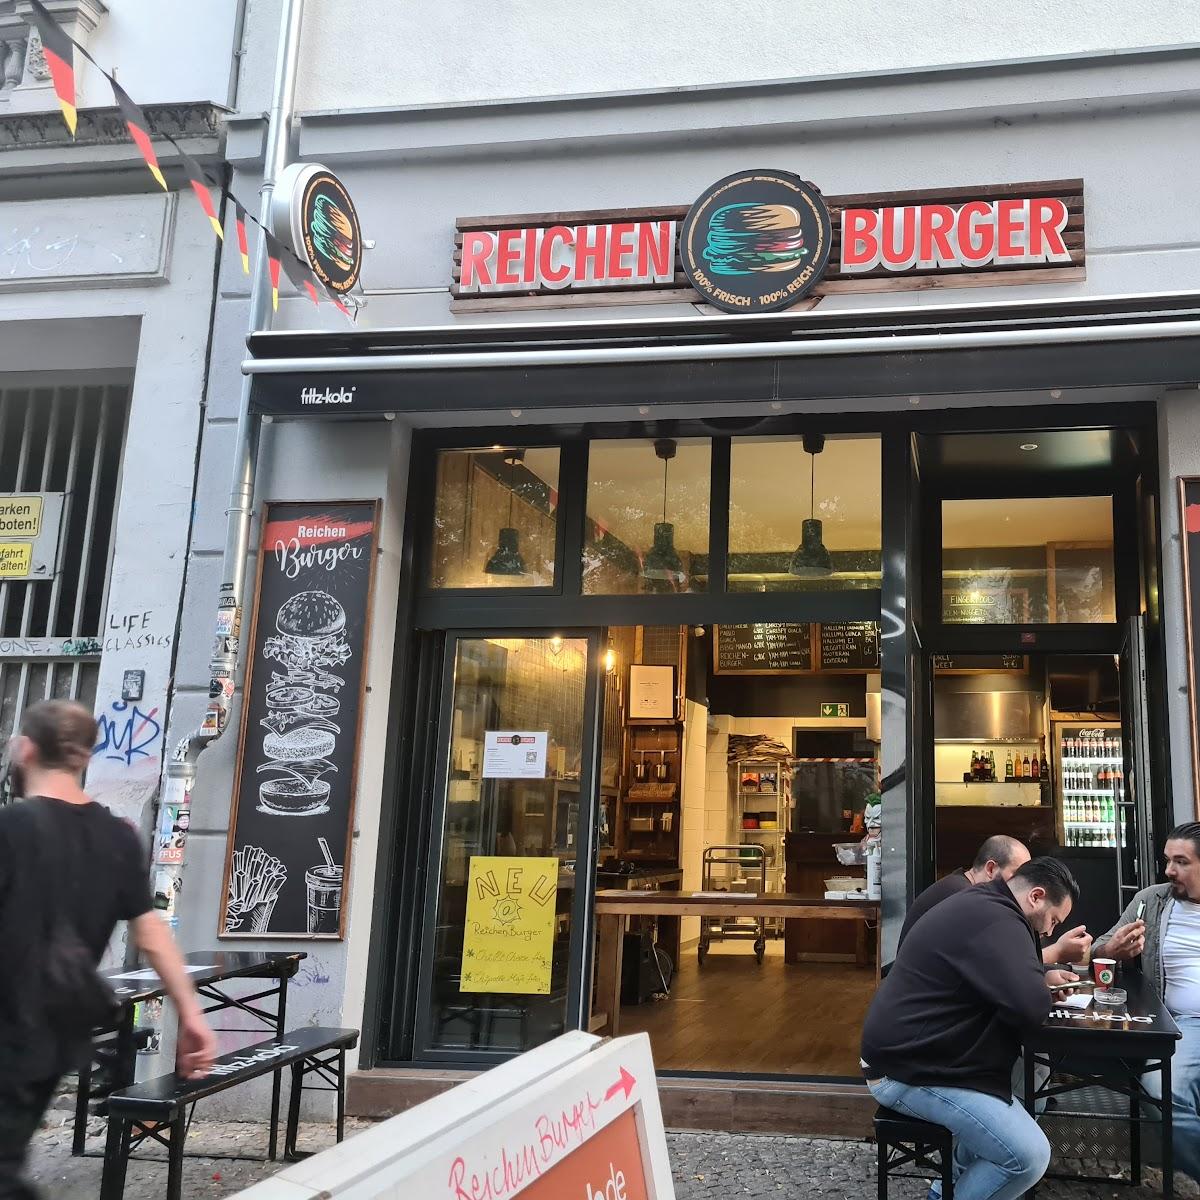 Restaurant "Reichen Burger" in Berlin